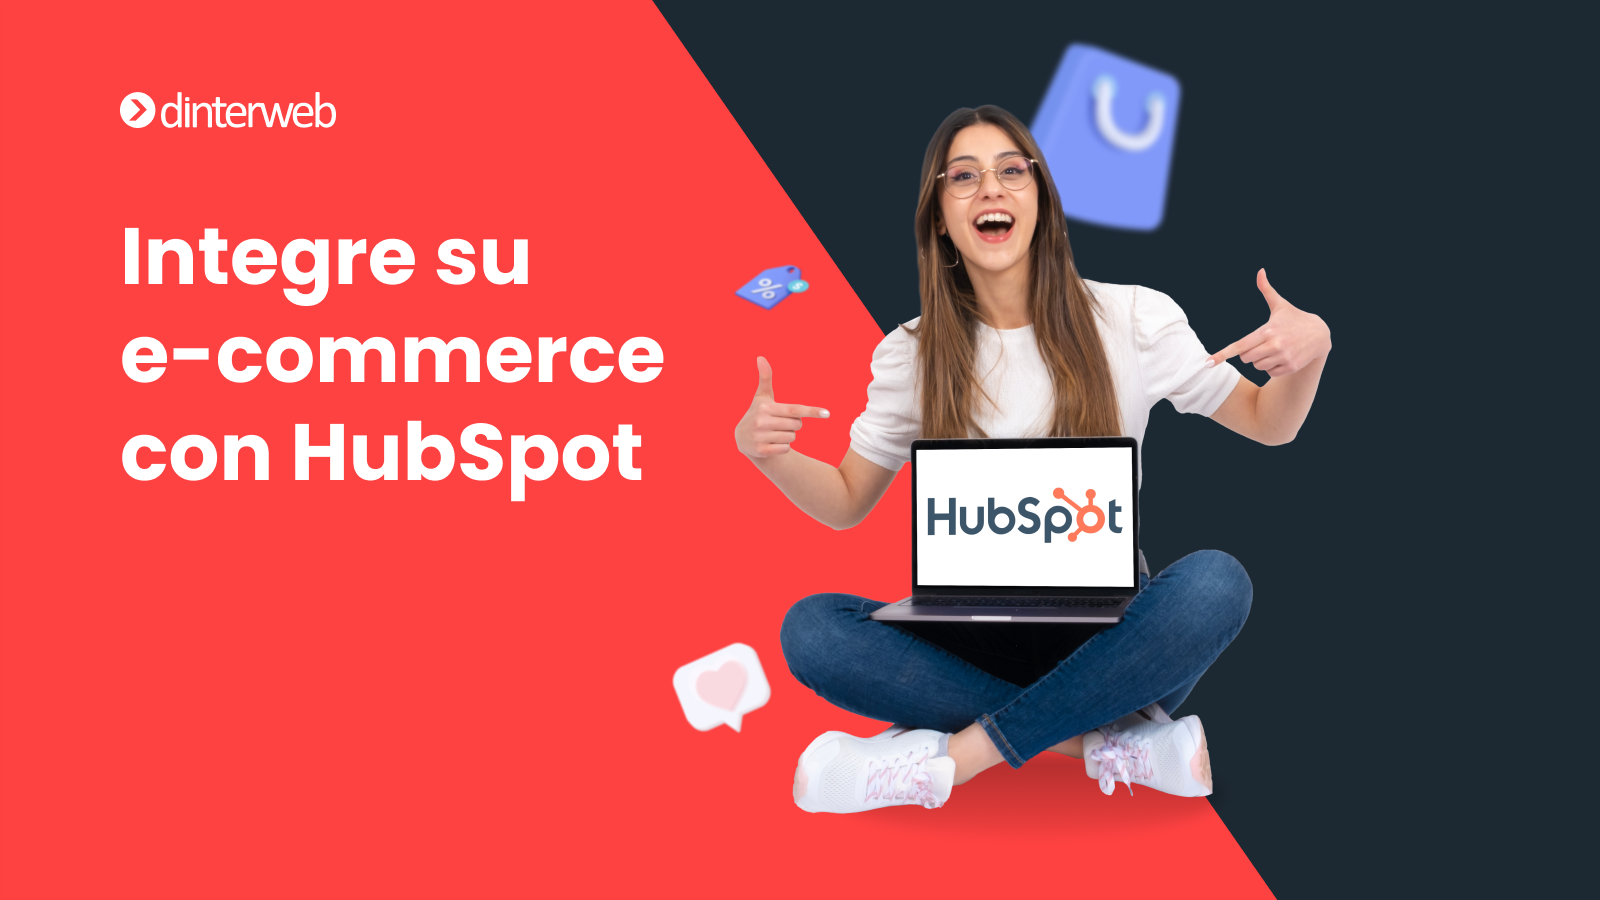 Integre HubSpot a su E-commerce